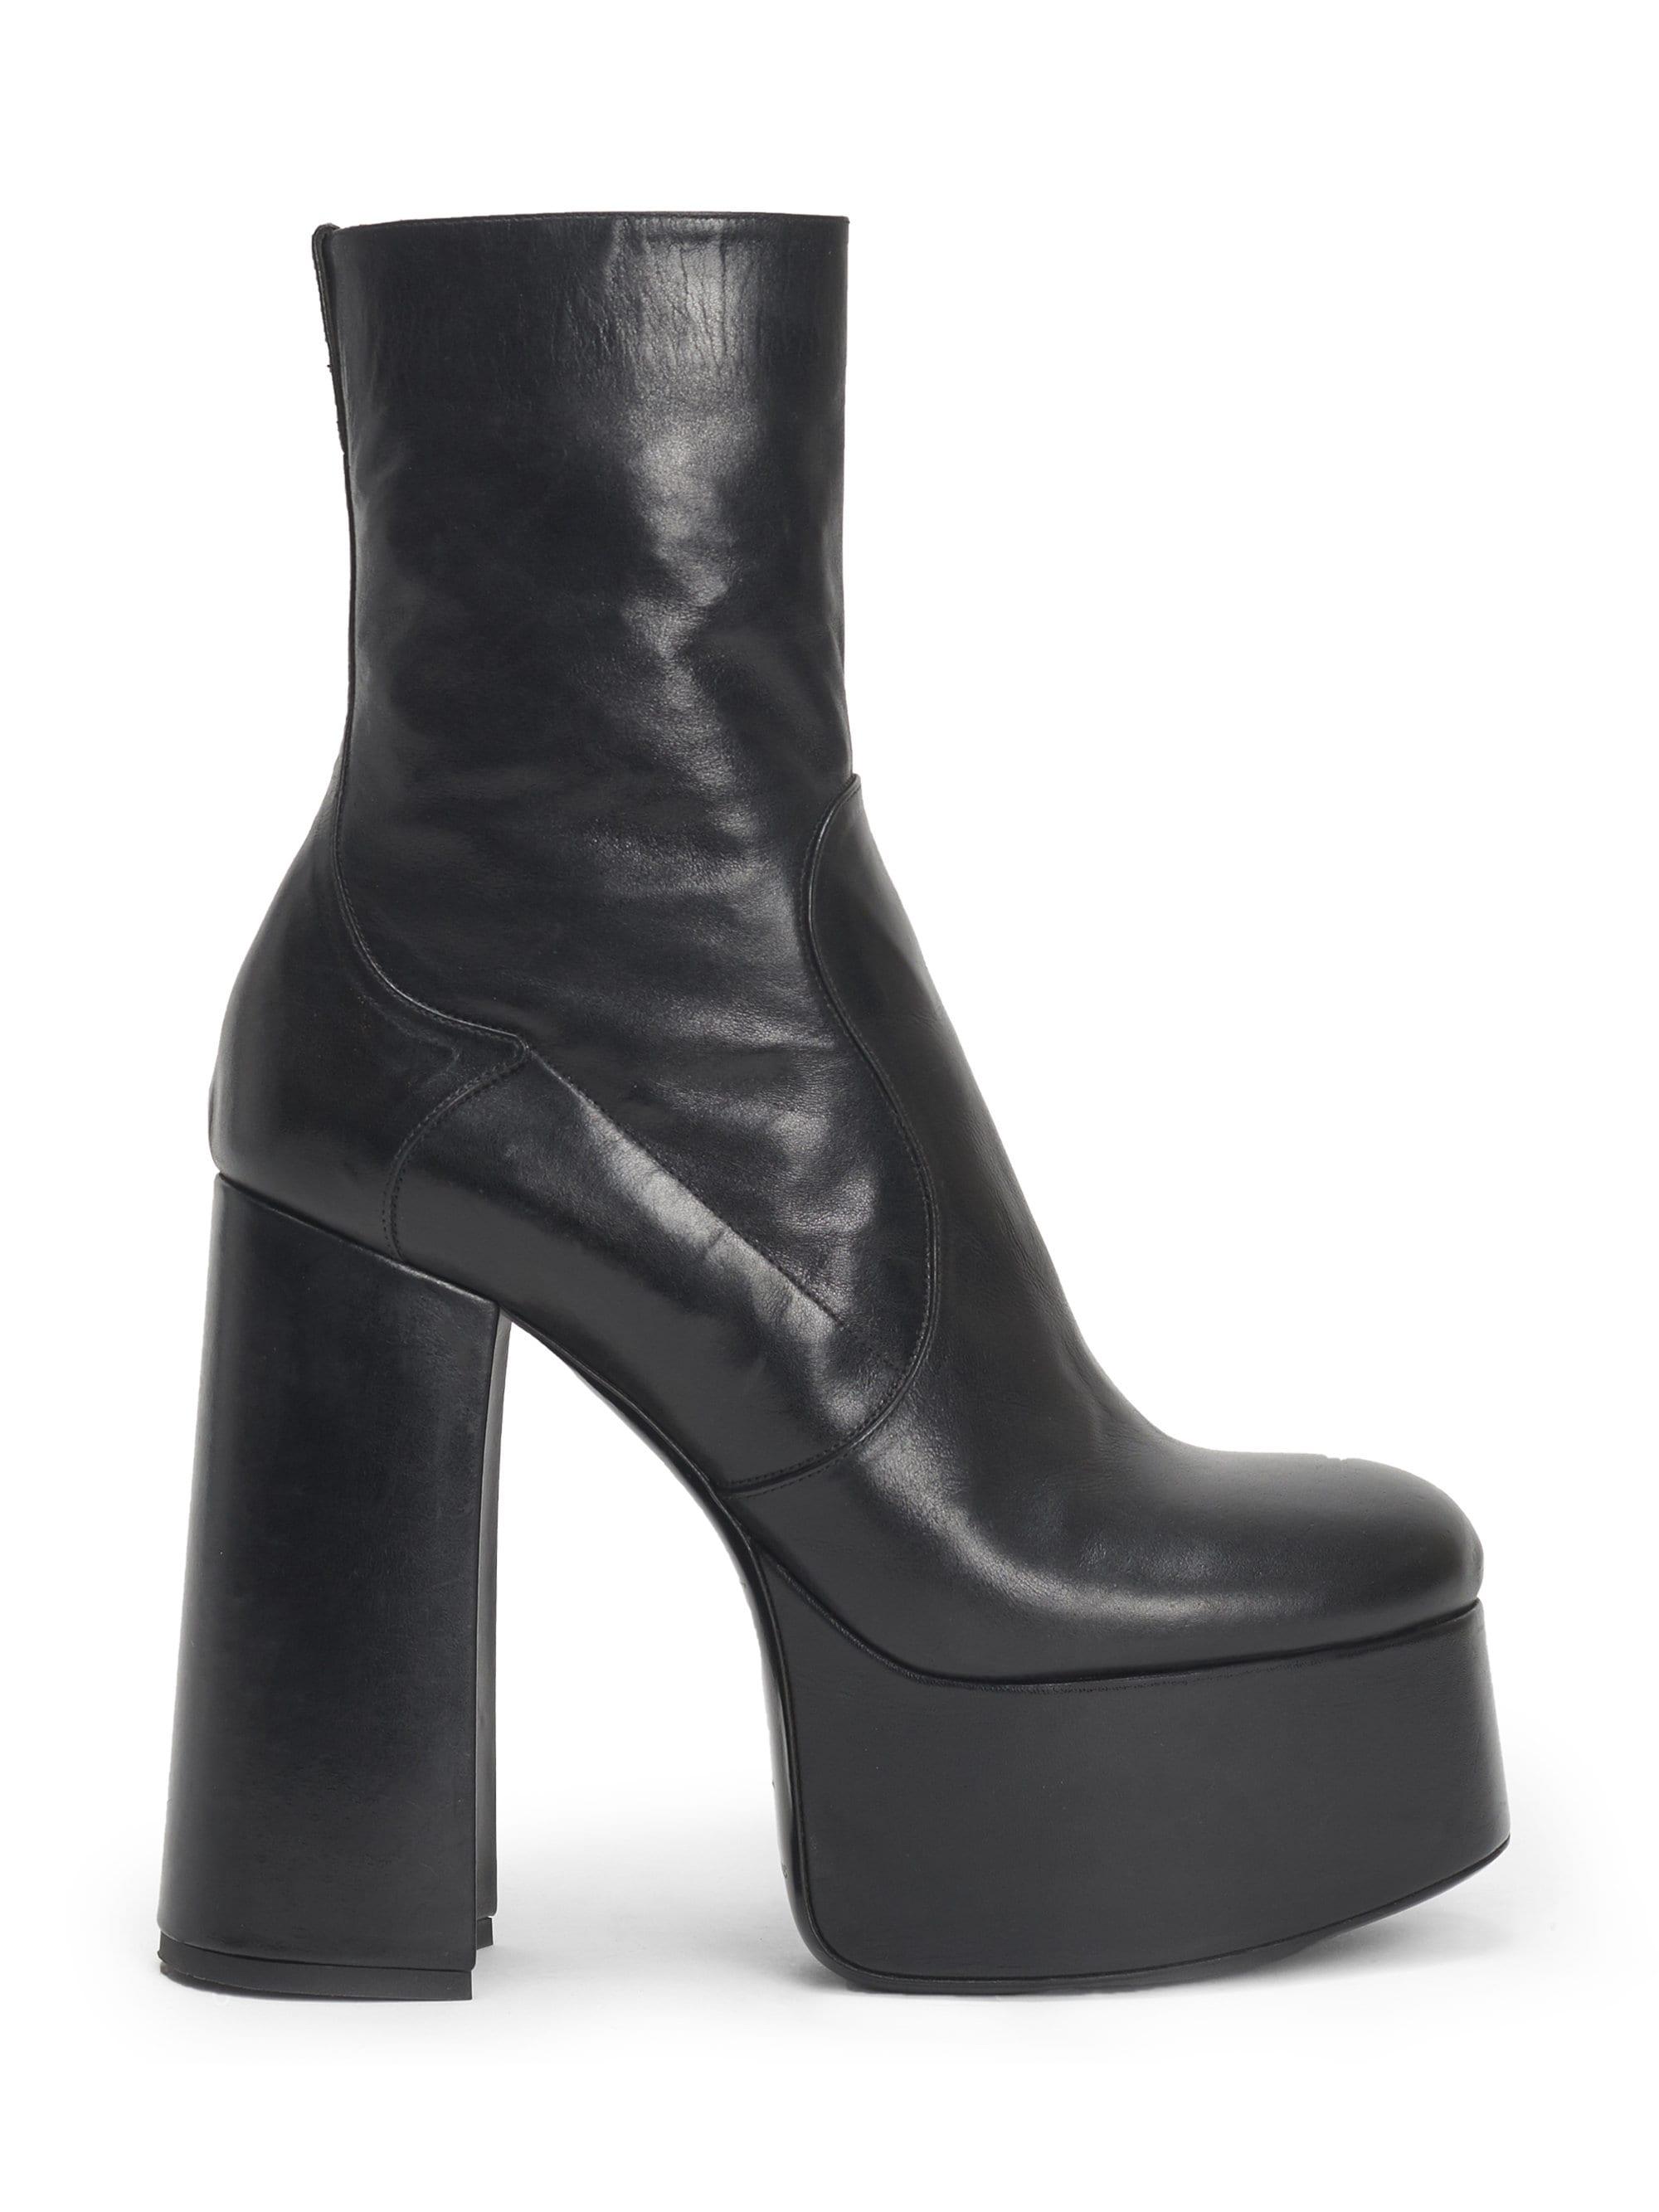 Saint Laurent Women's Billy Platform Leather Boots - Black - Lyst